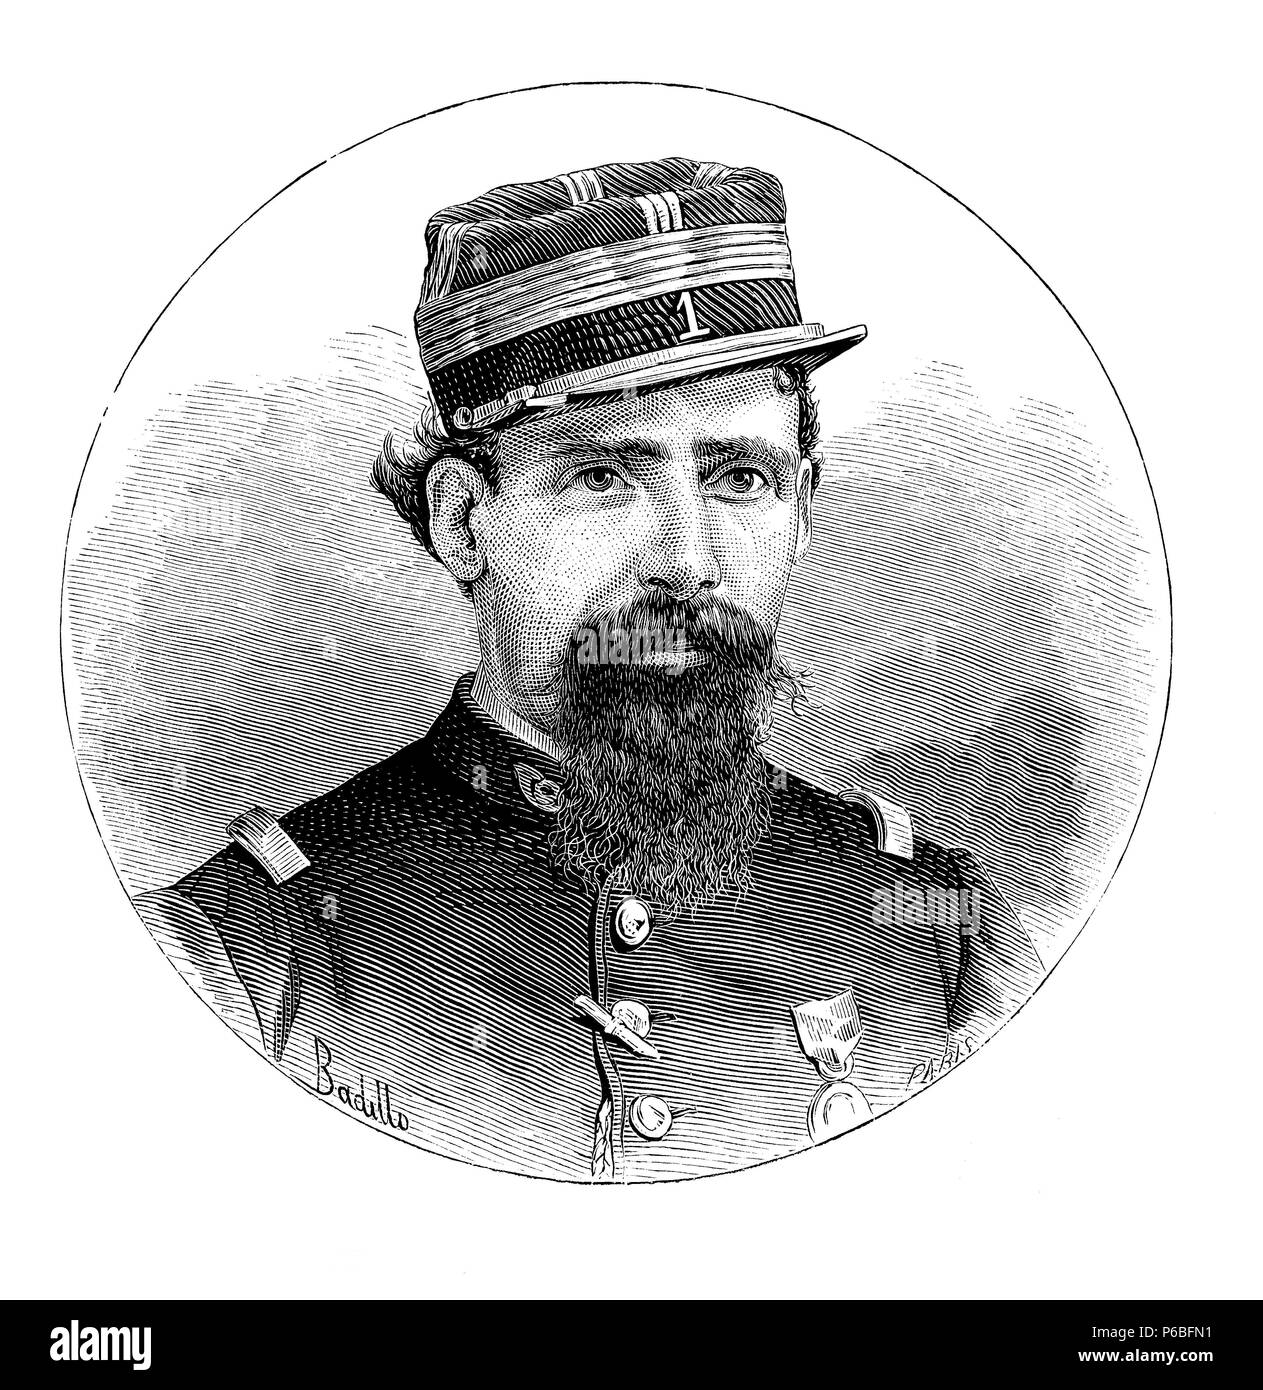 Lorenzo Latorre (1844-1916), coronel del ejército aclamado como dictador de la república oriental del Uruguay en marzo de 1876. Grabado de 1876. Stock Photo